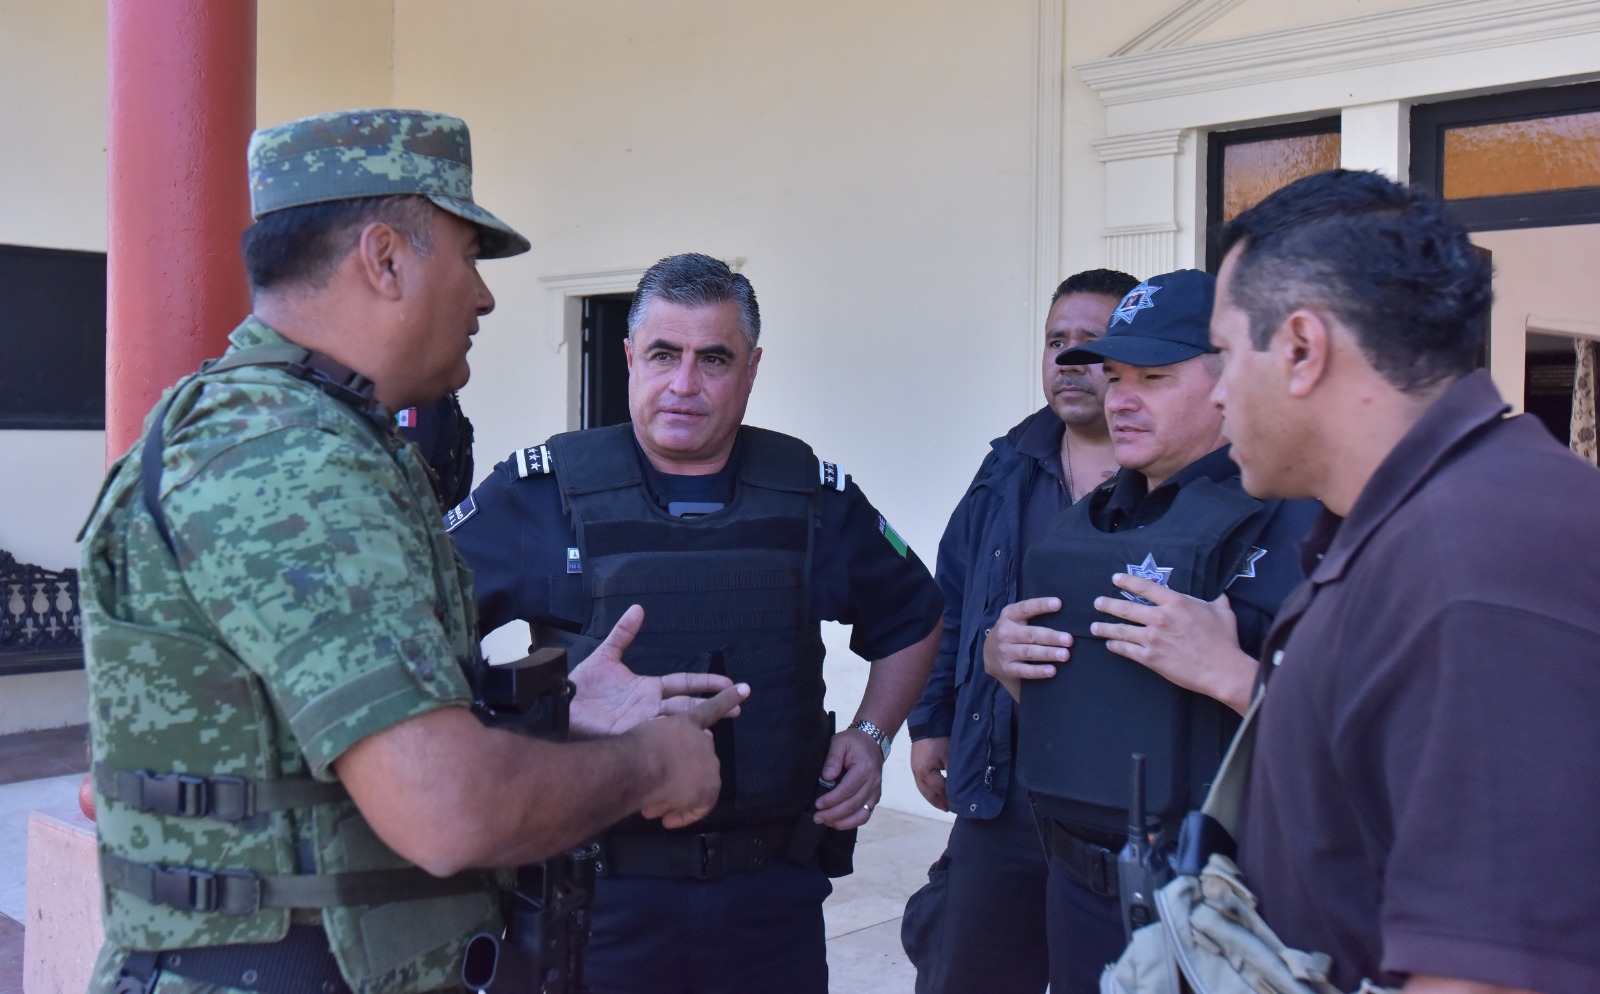 REFUERZA POLICÍA MUNICIPAL OPERATIVOS COORDINADOS DE SEGURIDAD, EMERGENCIA Y RESCATE CON CORPORACIONES FEDERALES Y ESTATALES